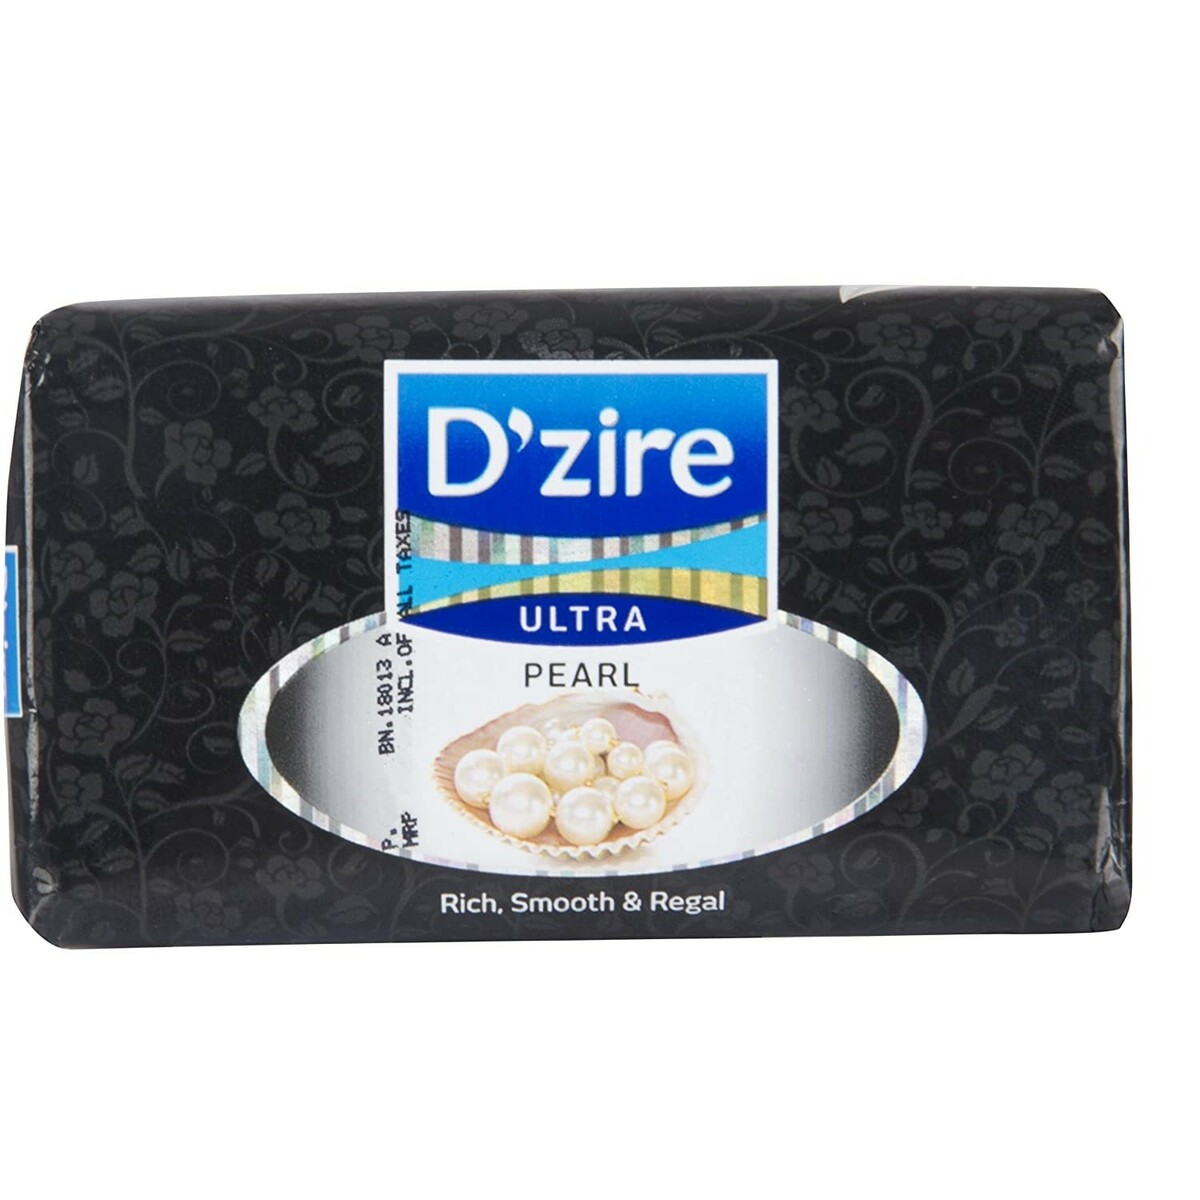 D'Zire Soap Assrtd 125g 4+2 Free